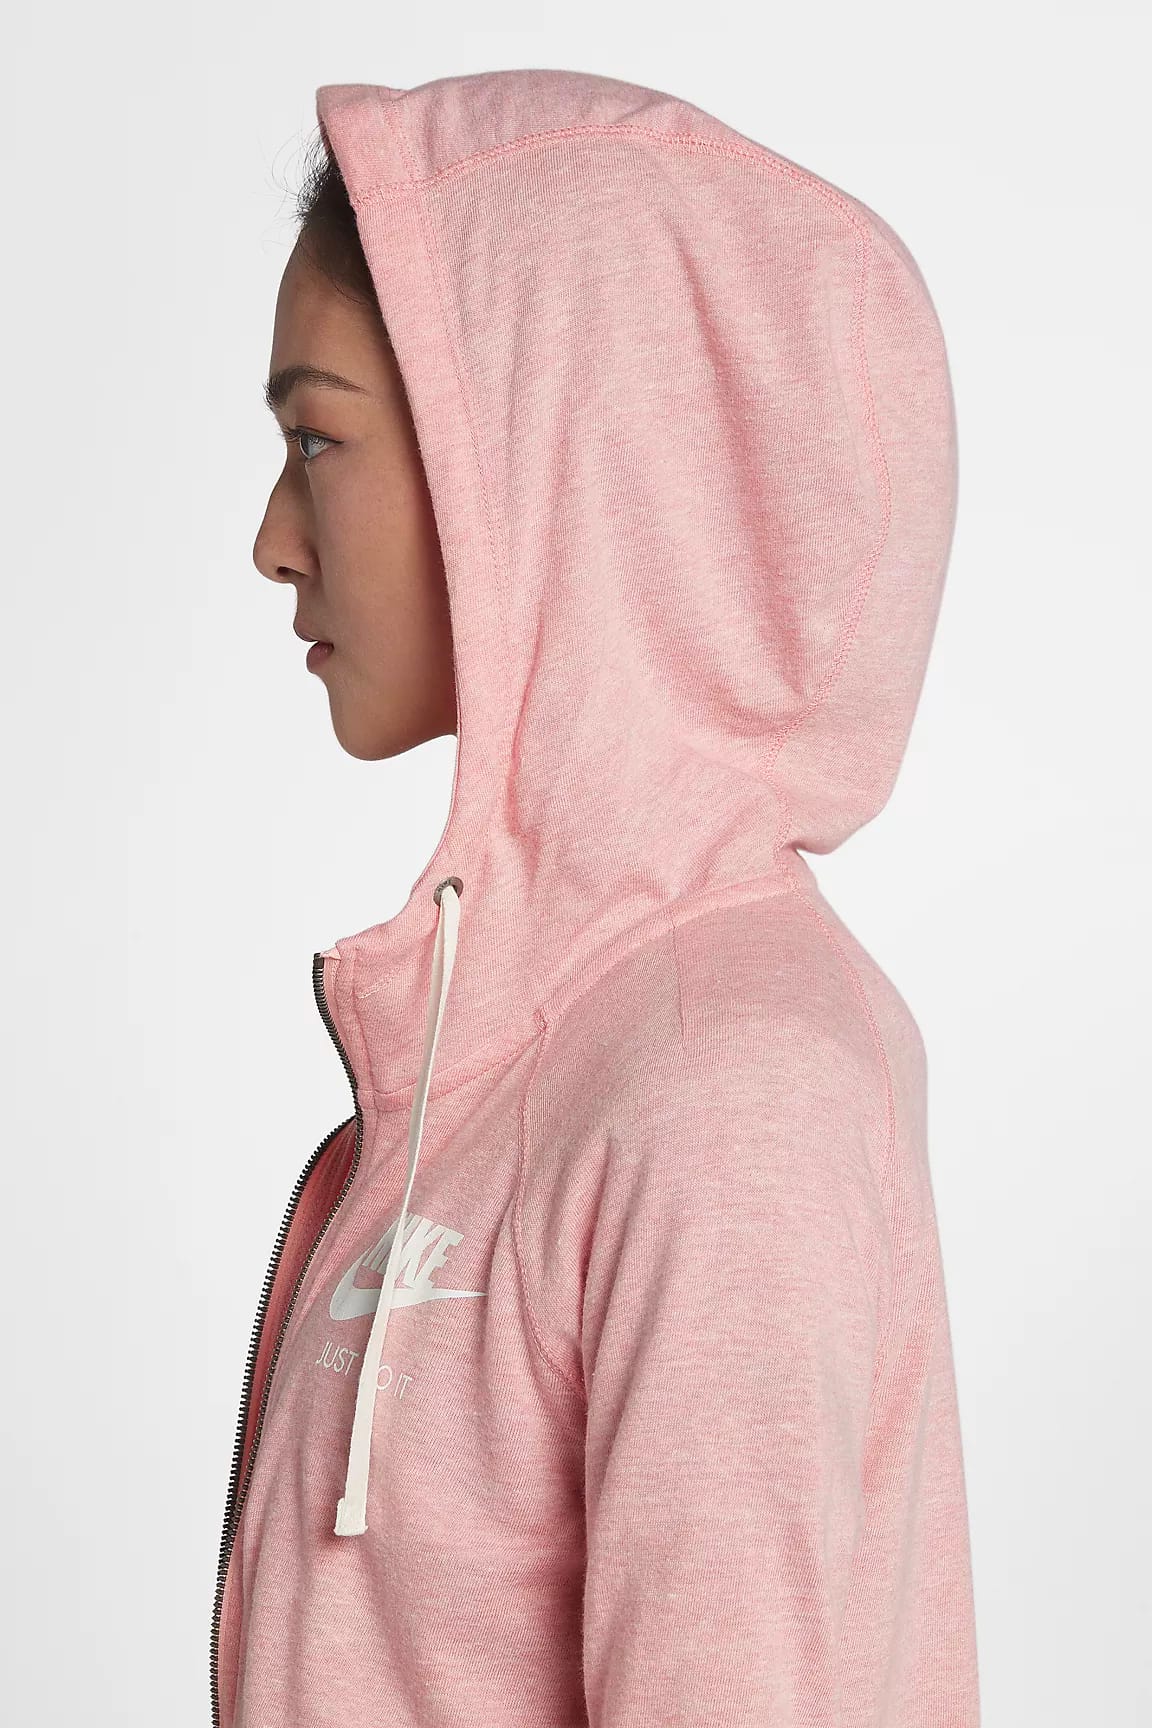 nike zip up hoodie pink 